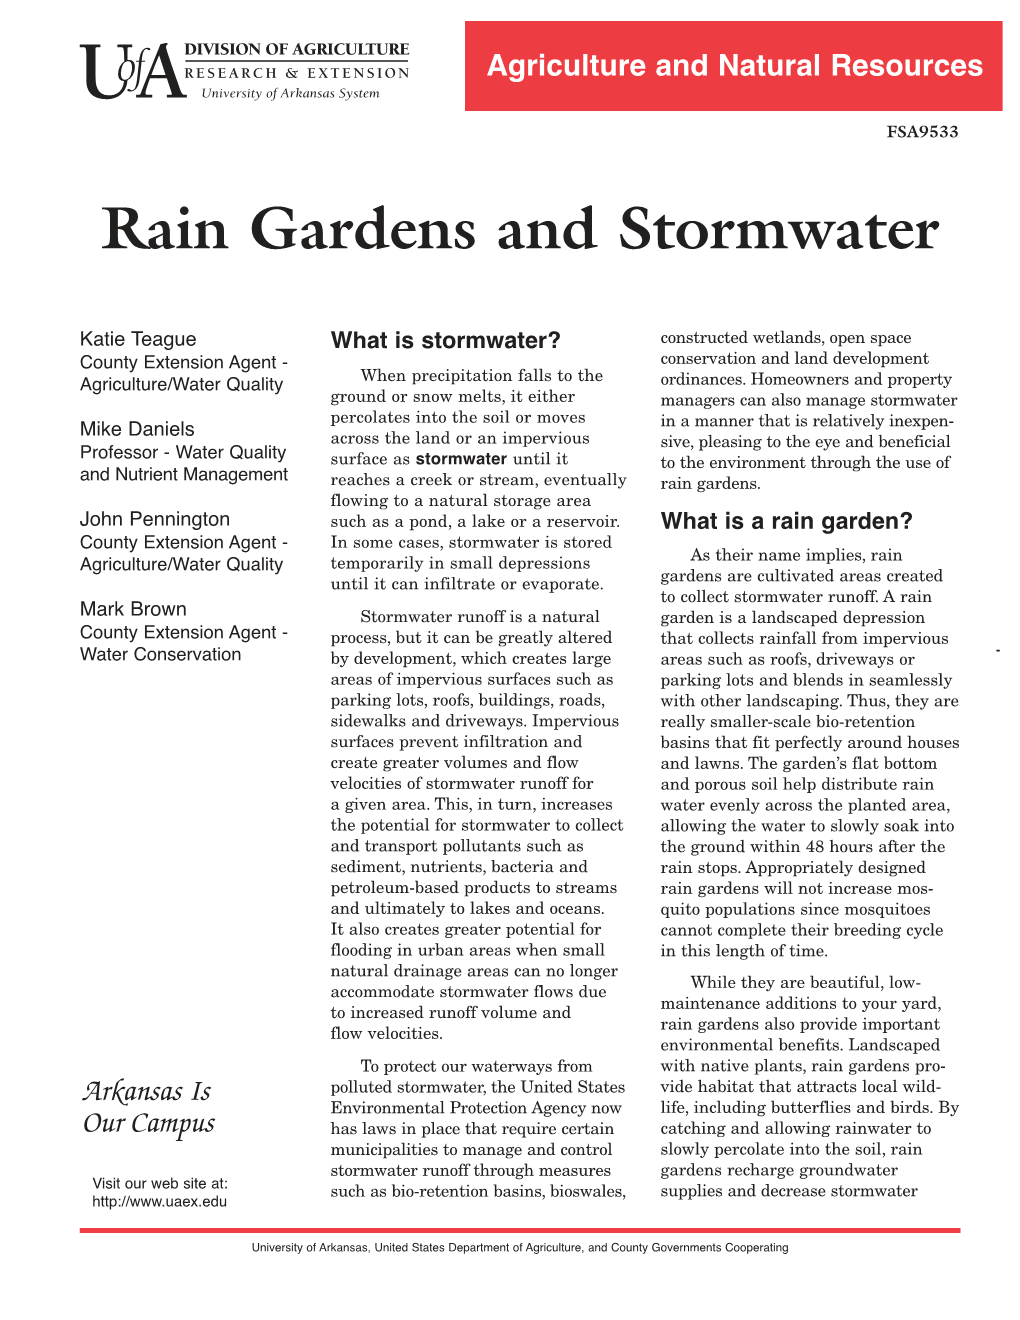 Rain Gardens and Stormwater